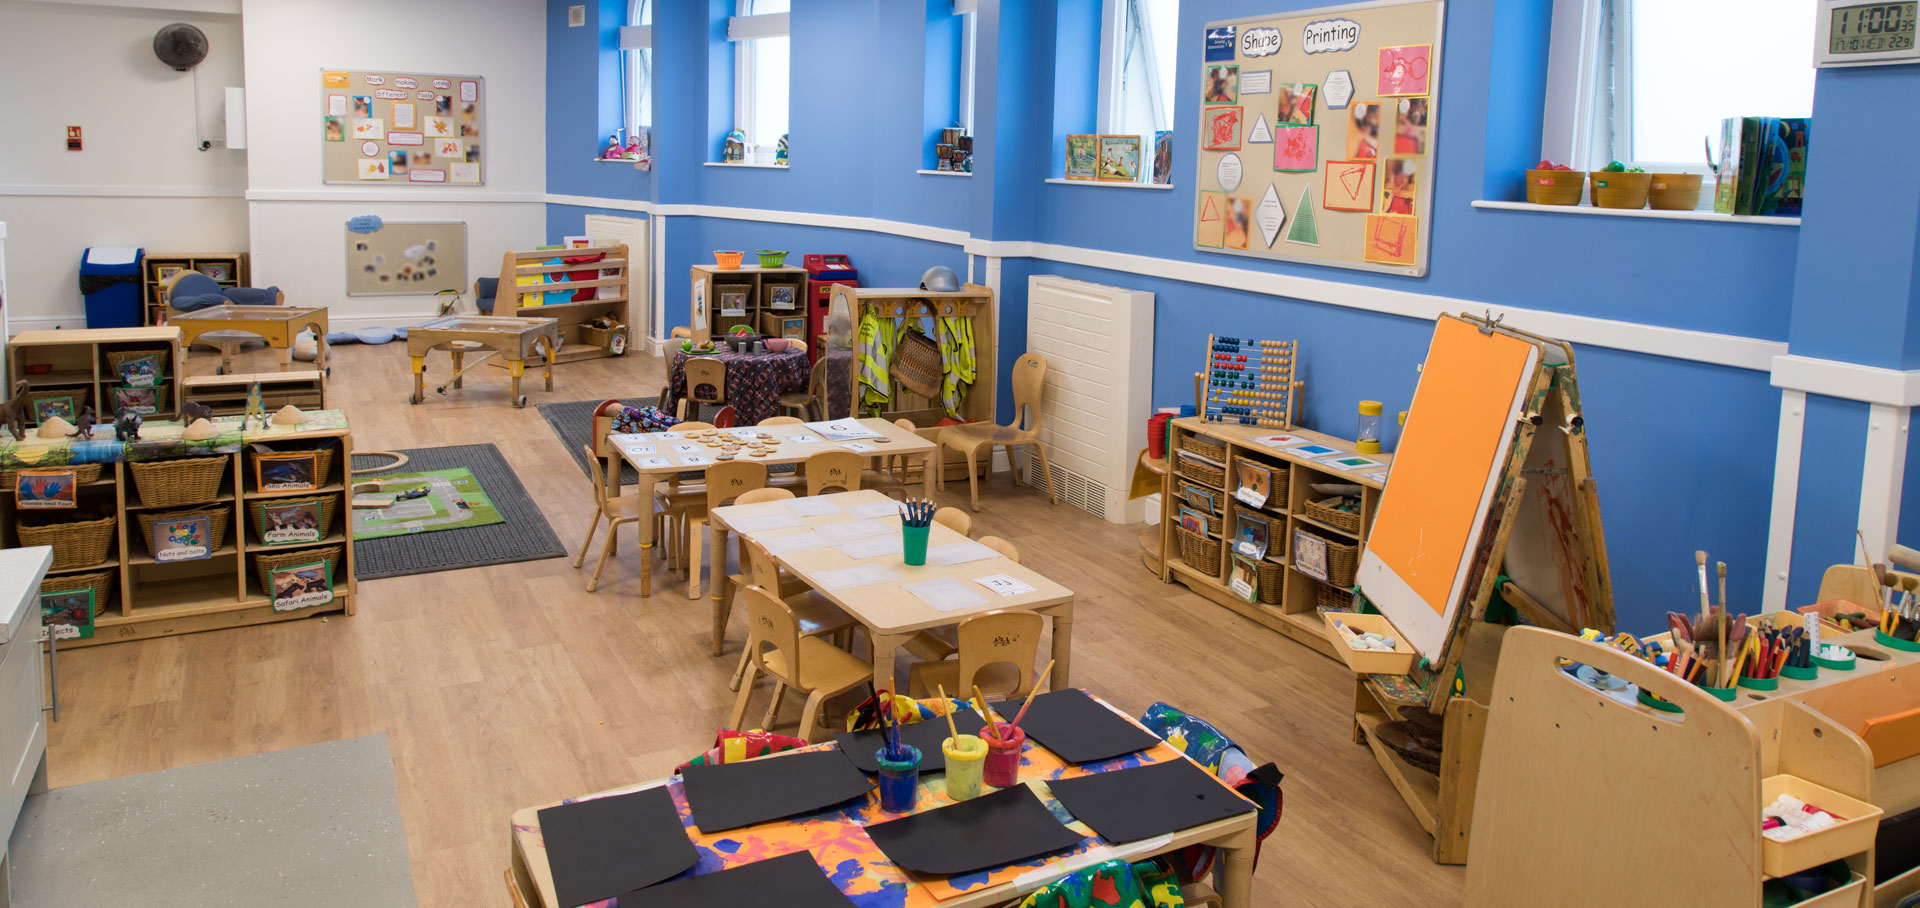 West Dulwich Day Nursery and Preschool